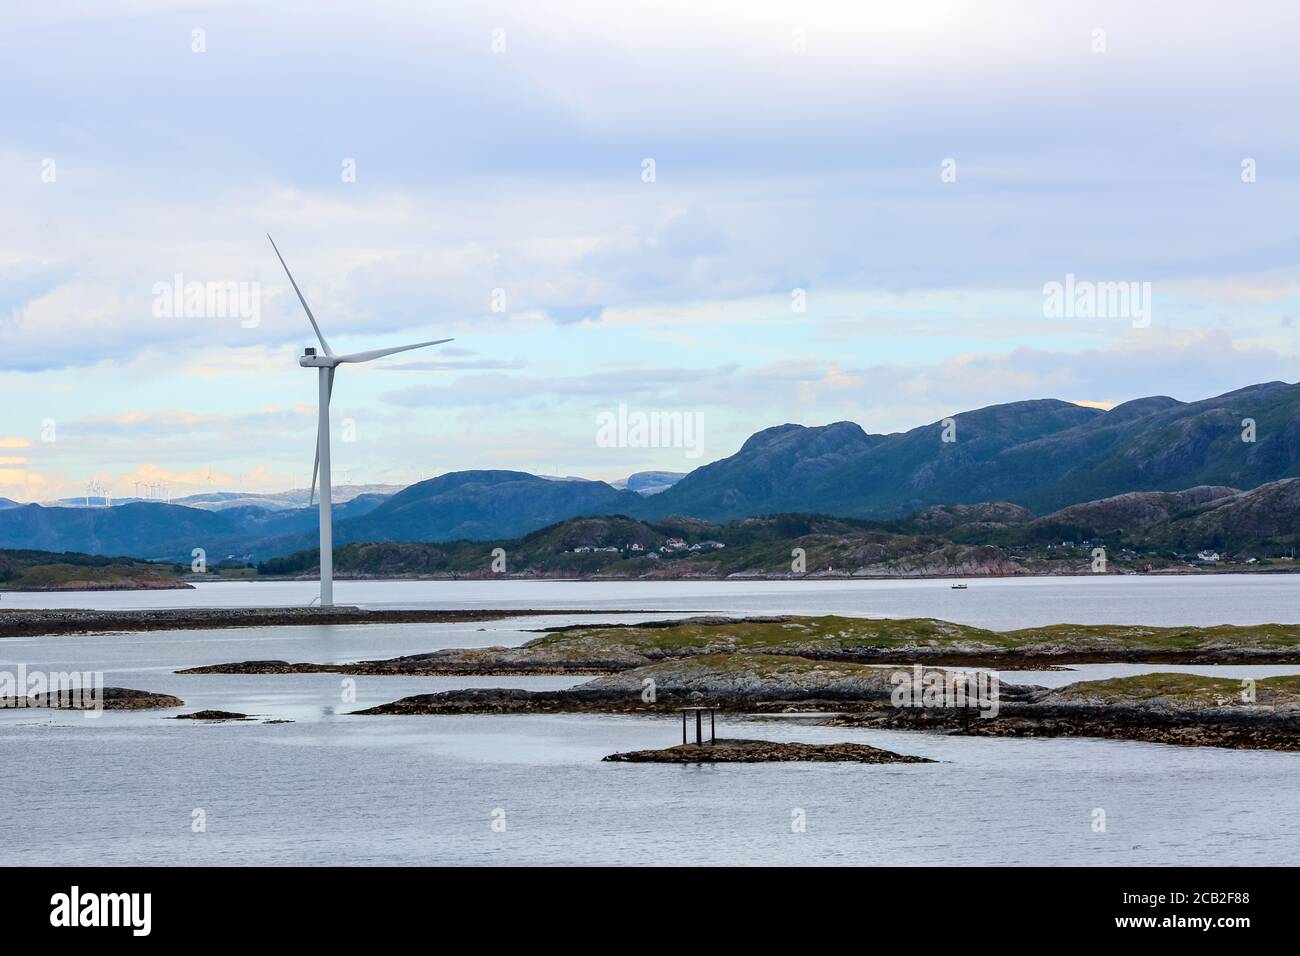 Windgenerators alond the Norwegian coastline in the Bjugn district, Norway Stock Photo